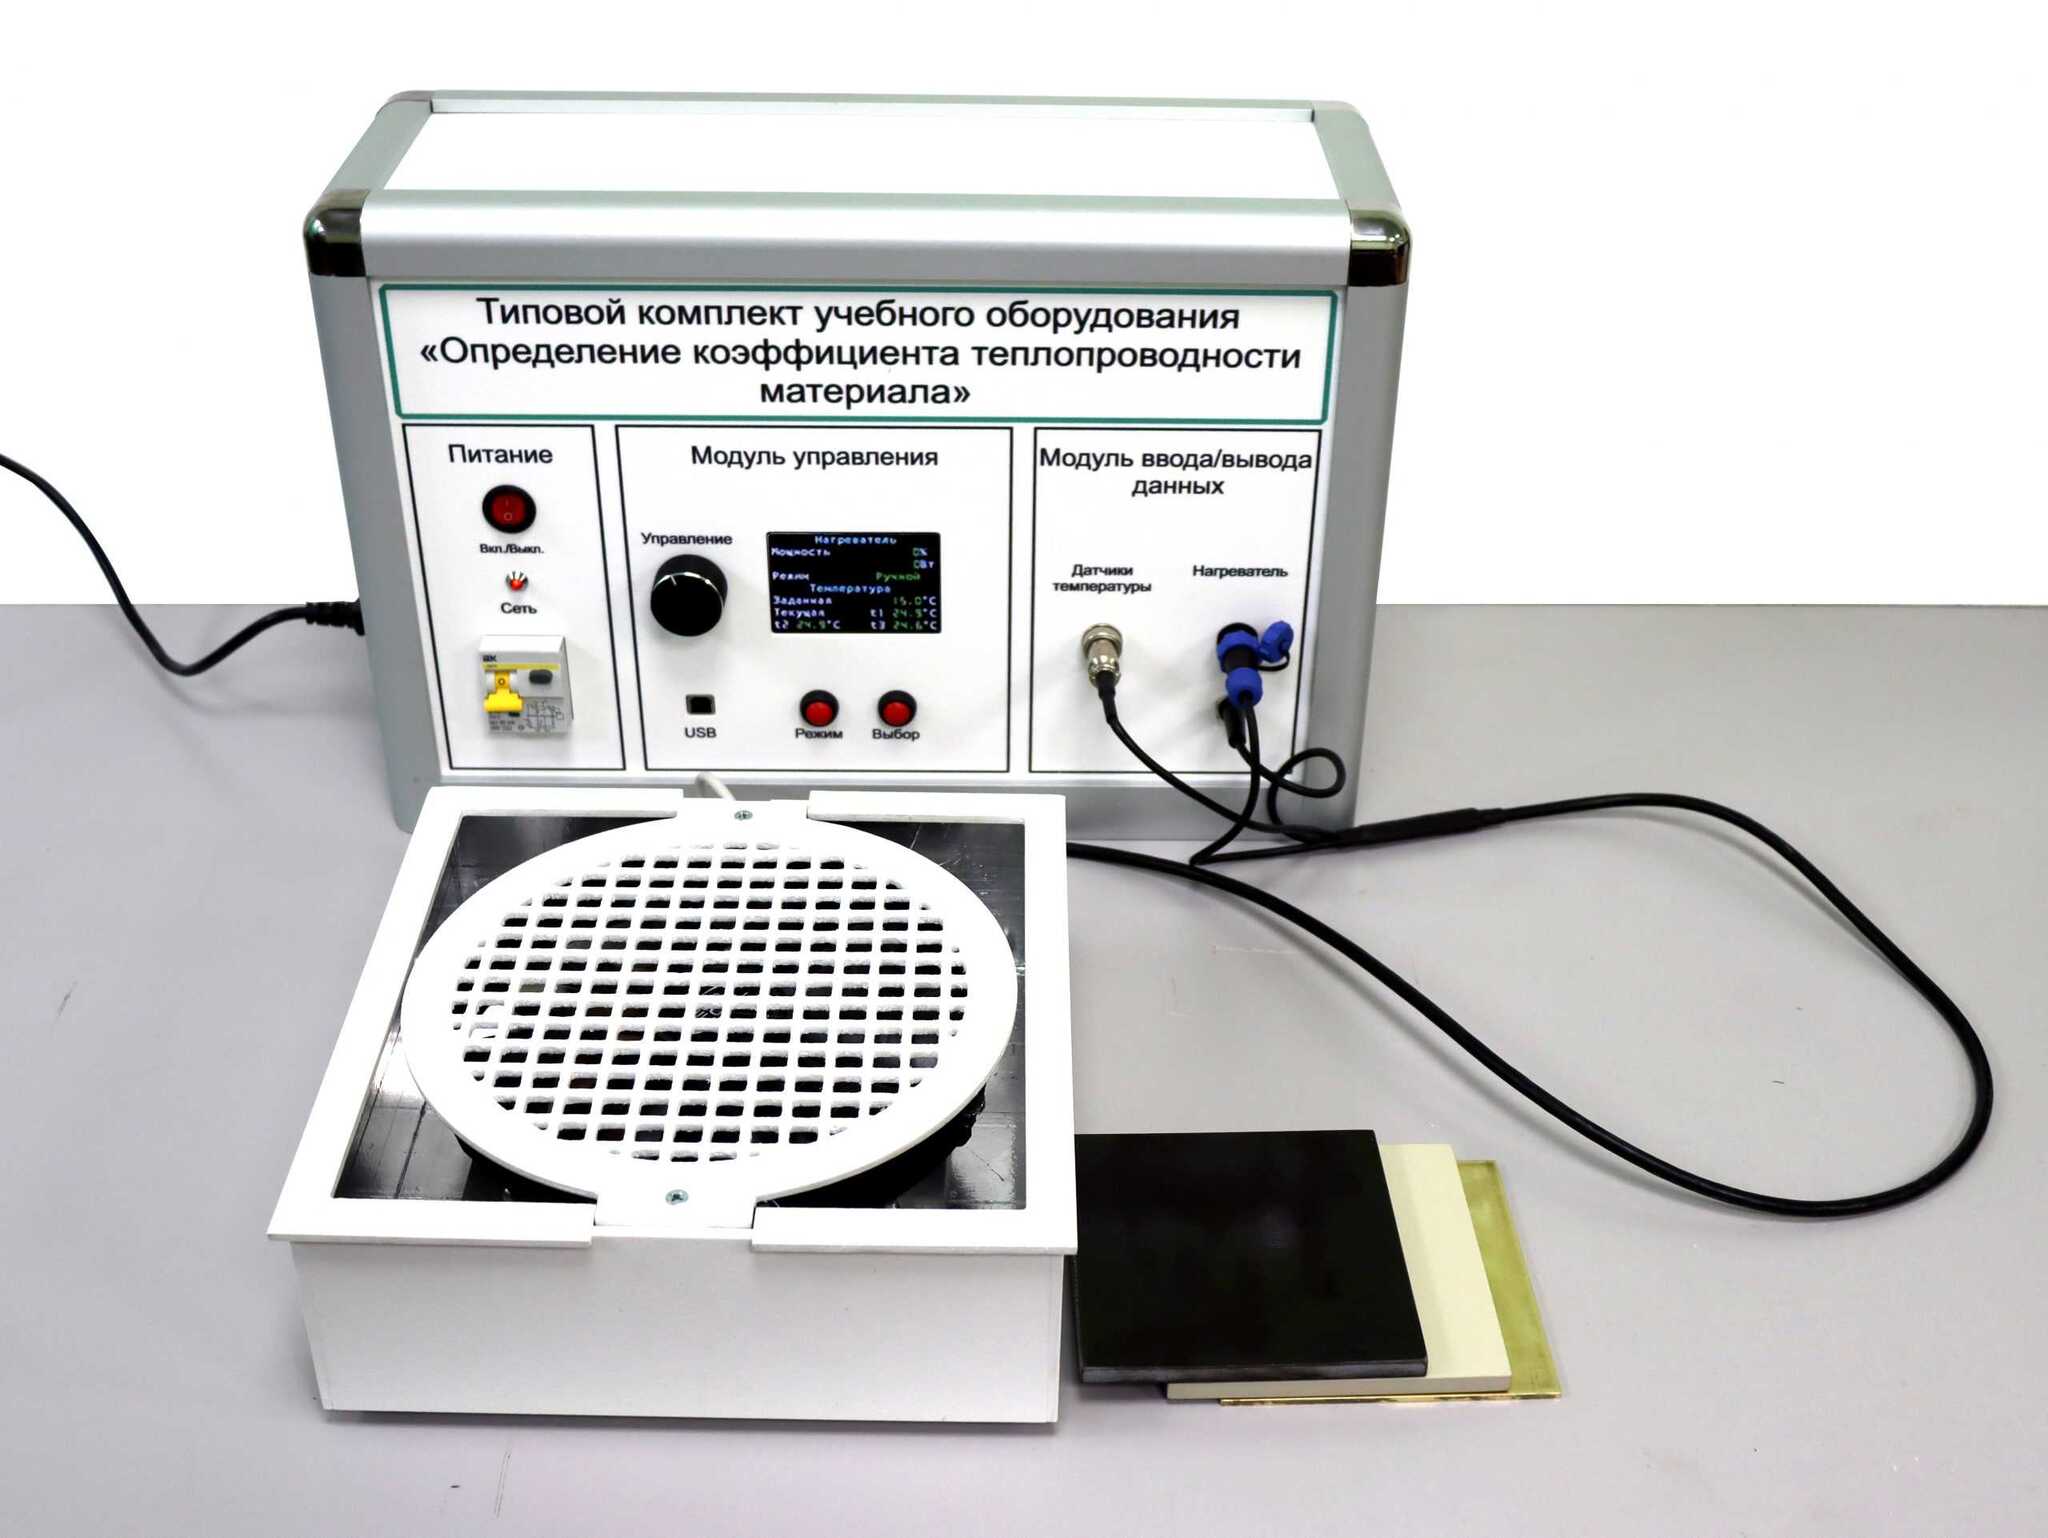 Изм оборудование. Лабораторный стенд "Теплотехника и термодинамика". Измеритель теплопроводности. Лабораторный аппарат для выявления сои. Аппарат для определения краски.